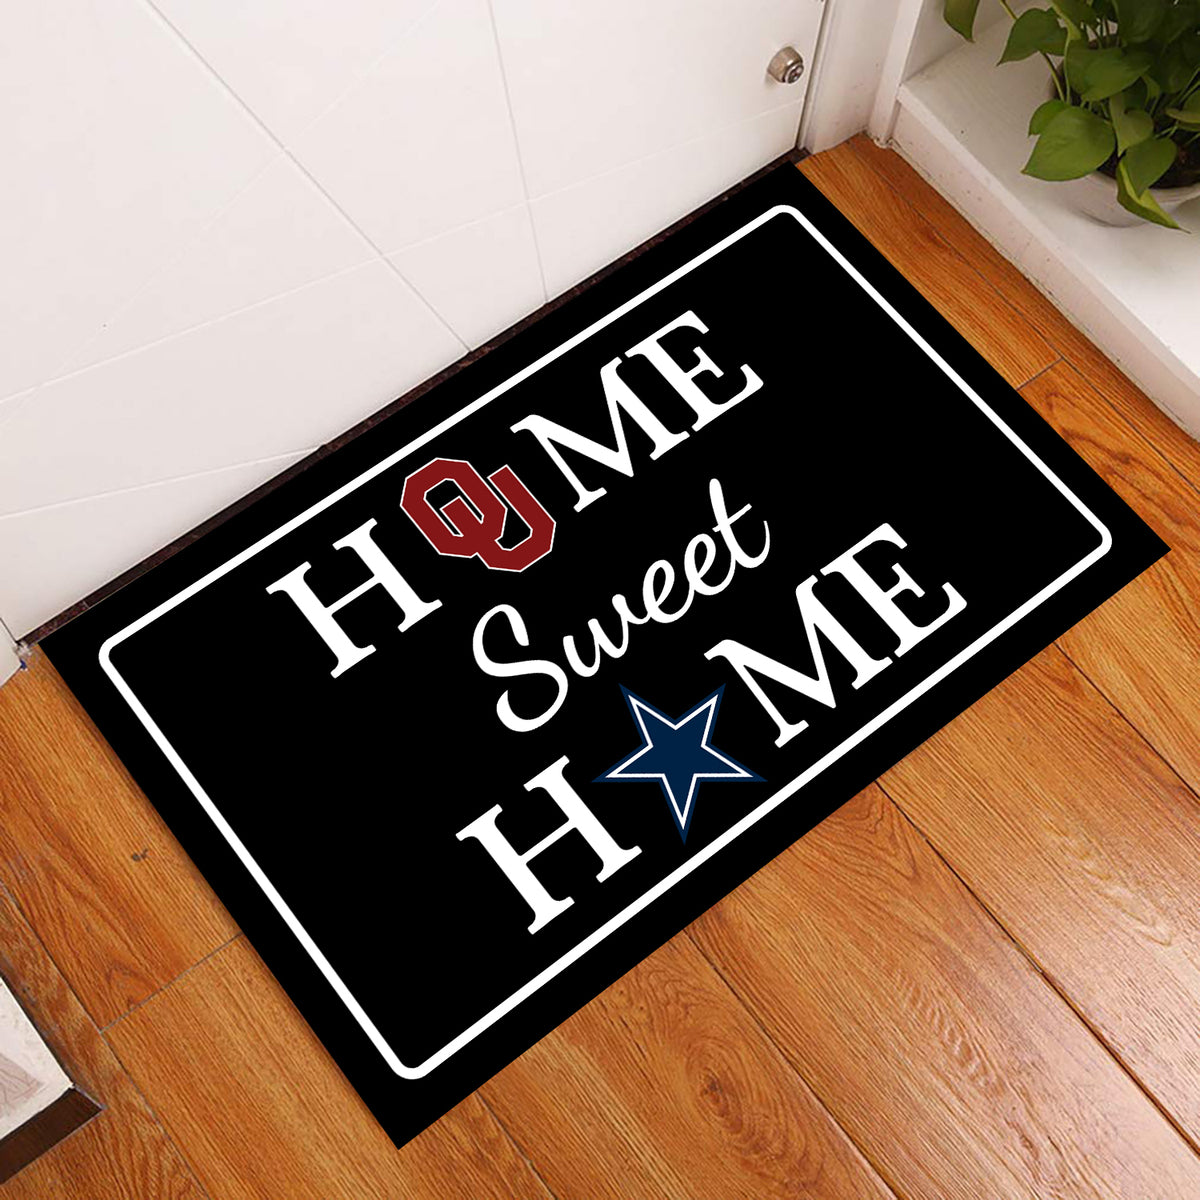 Home Sweet Home - Customized Doormat For Patrick Wootton - Anti Slip Indoor Doormat